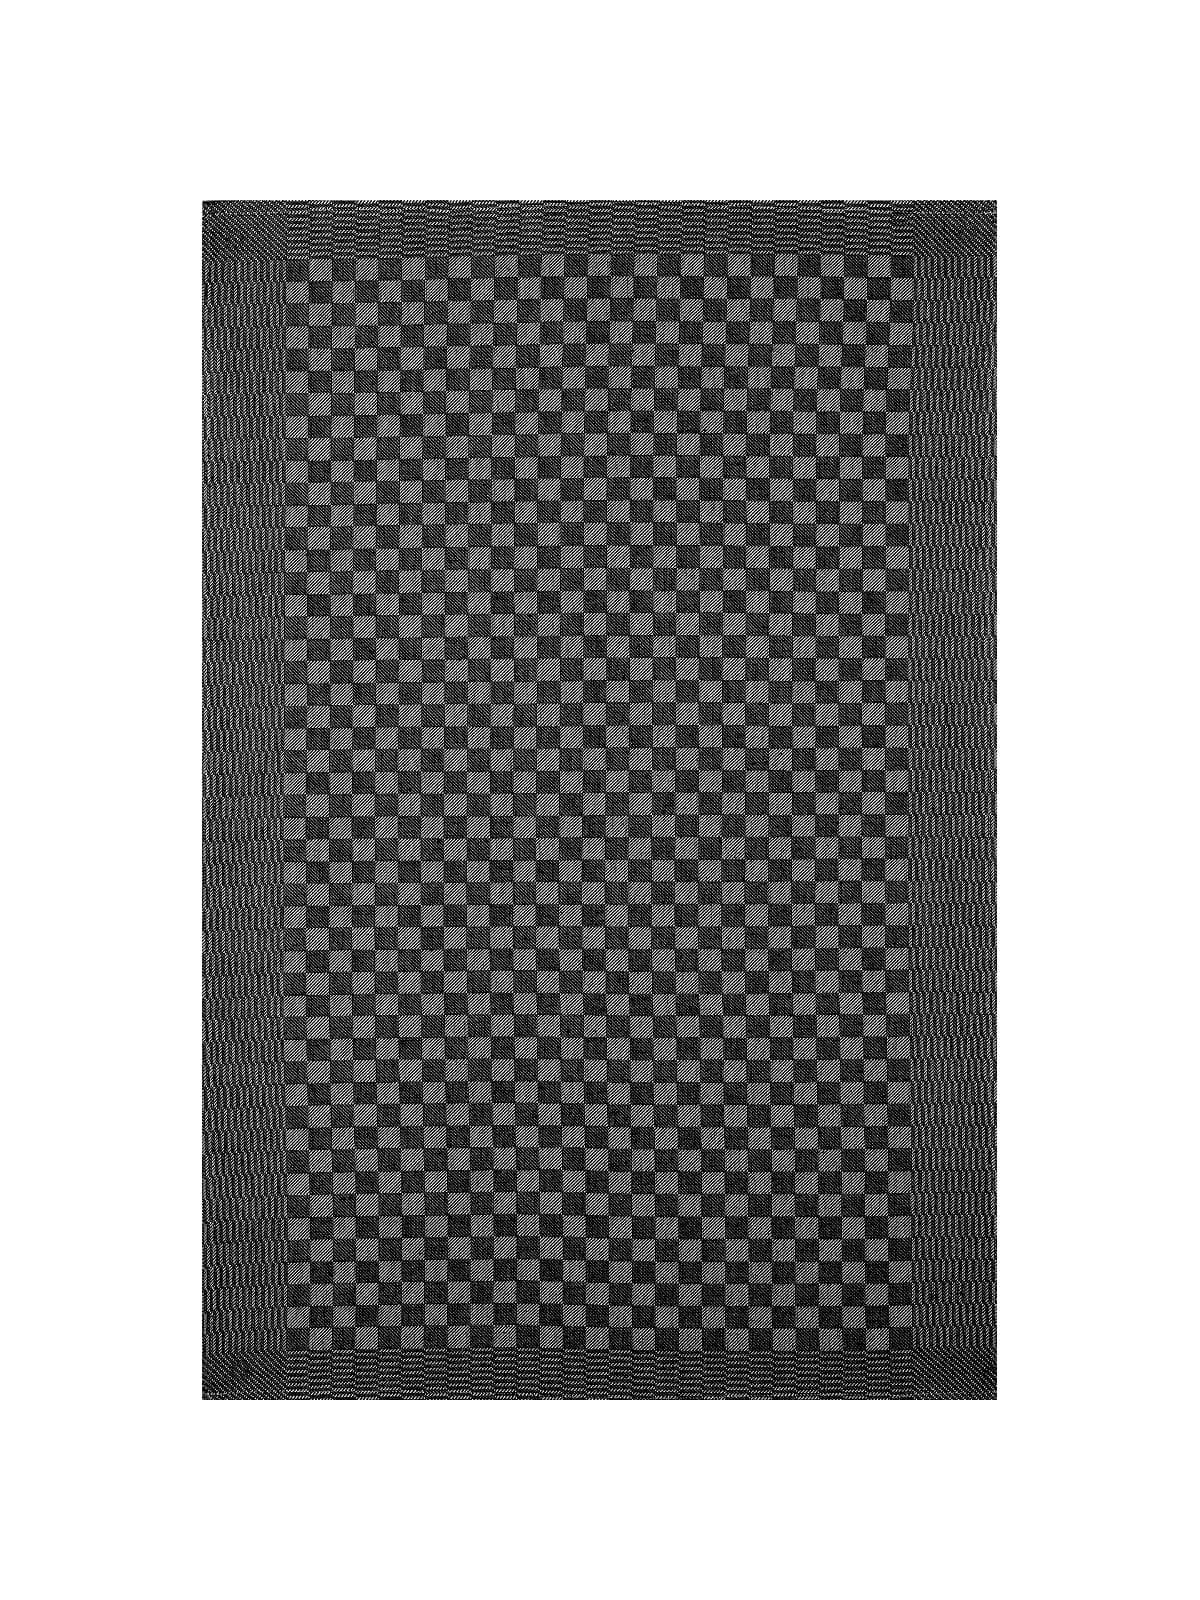 Pit Towel Black - 12 Pcs by  Kitchen & Table Linens.